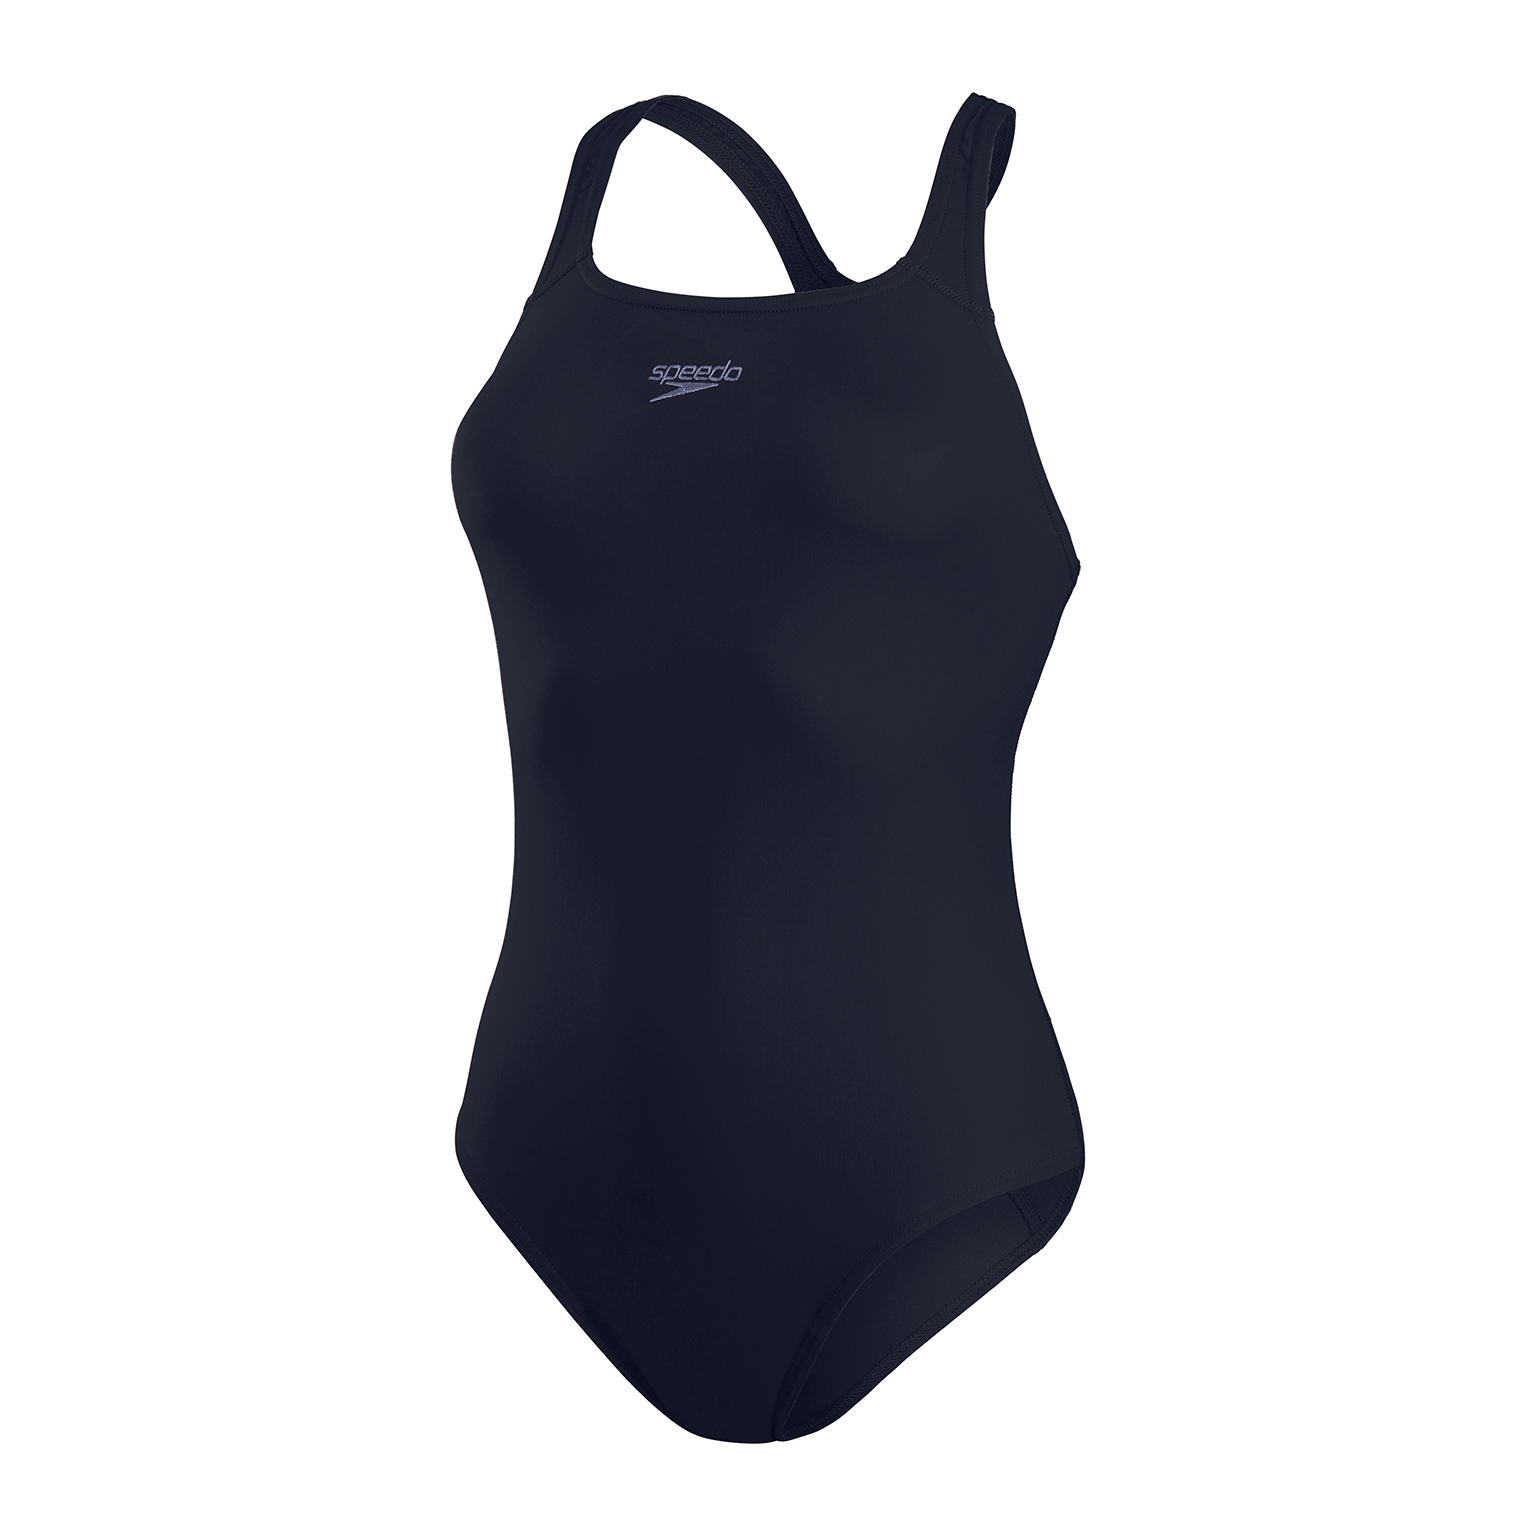 Speedo Badeanzug Für Damen Schwimmanzug Eco Medalist Schwarz Blau Bademode